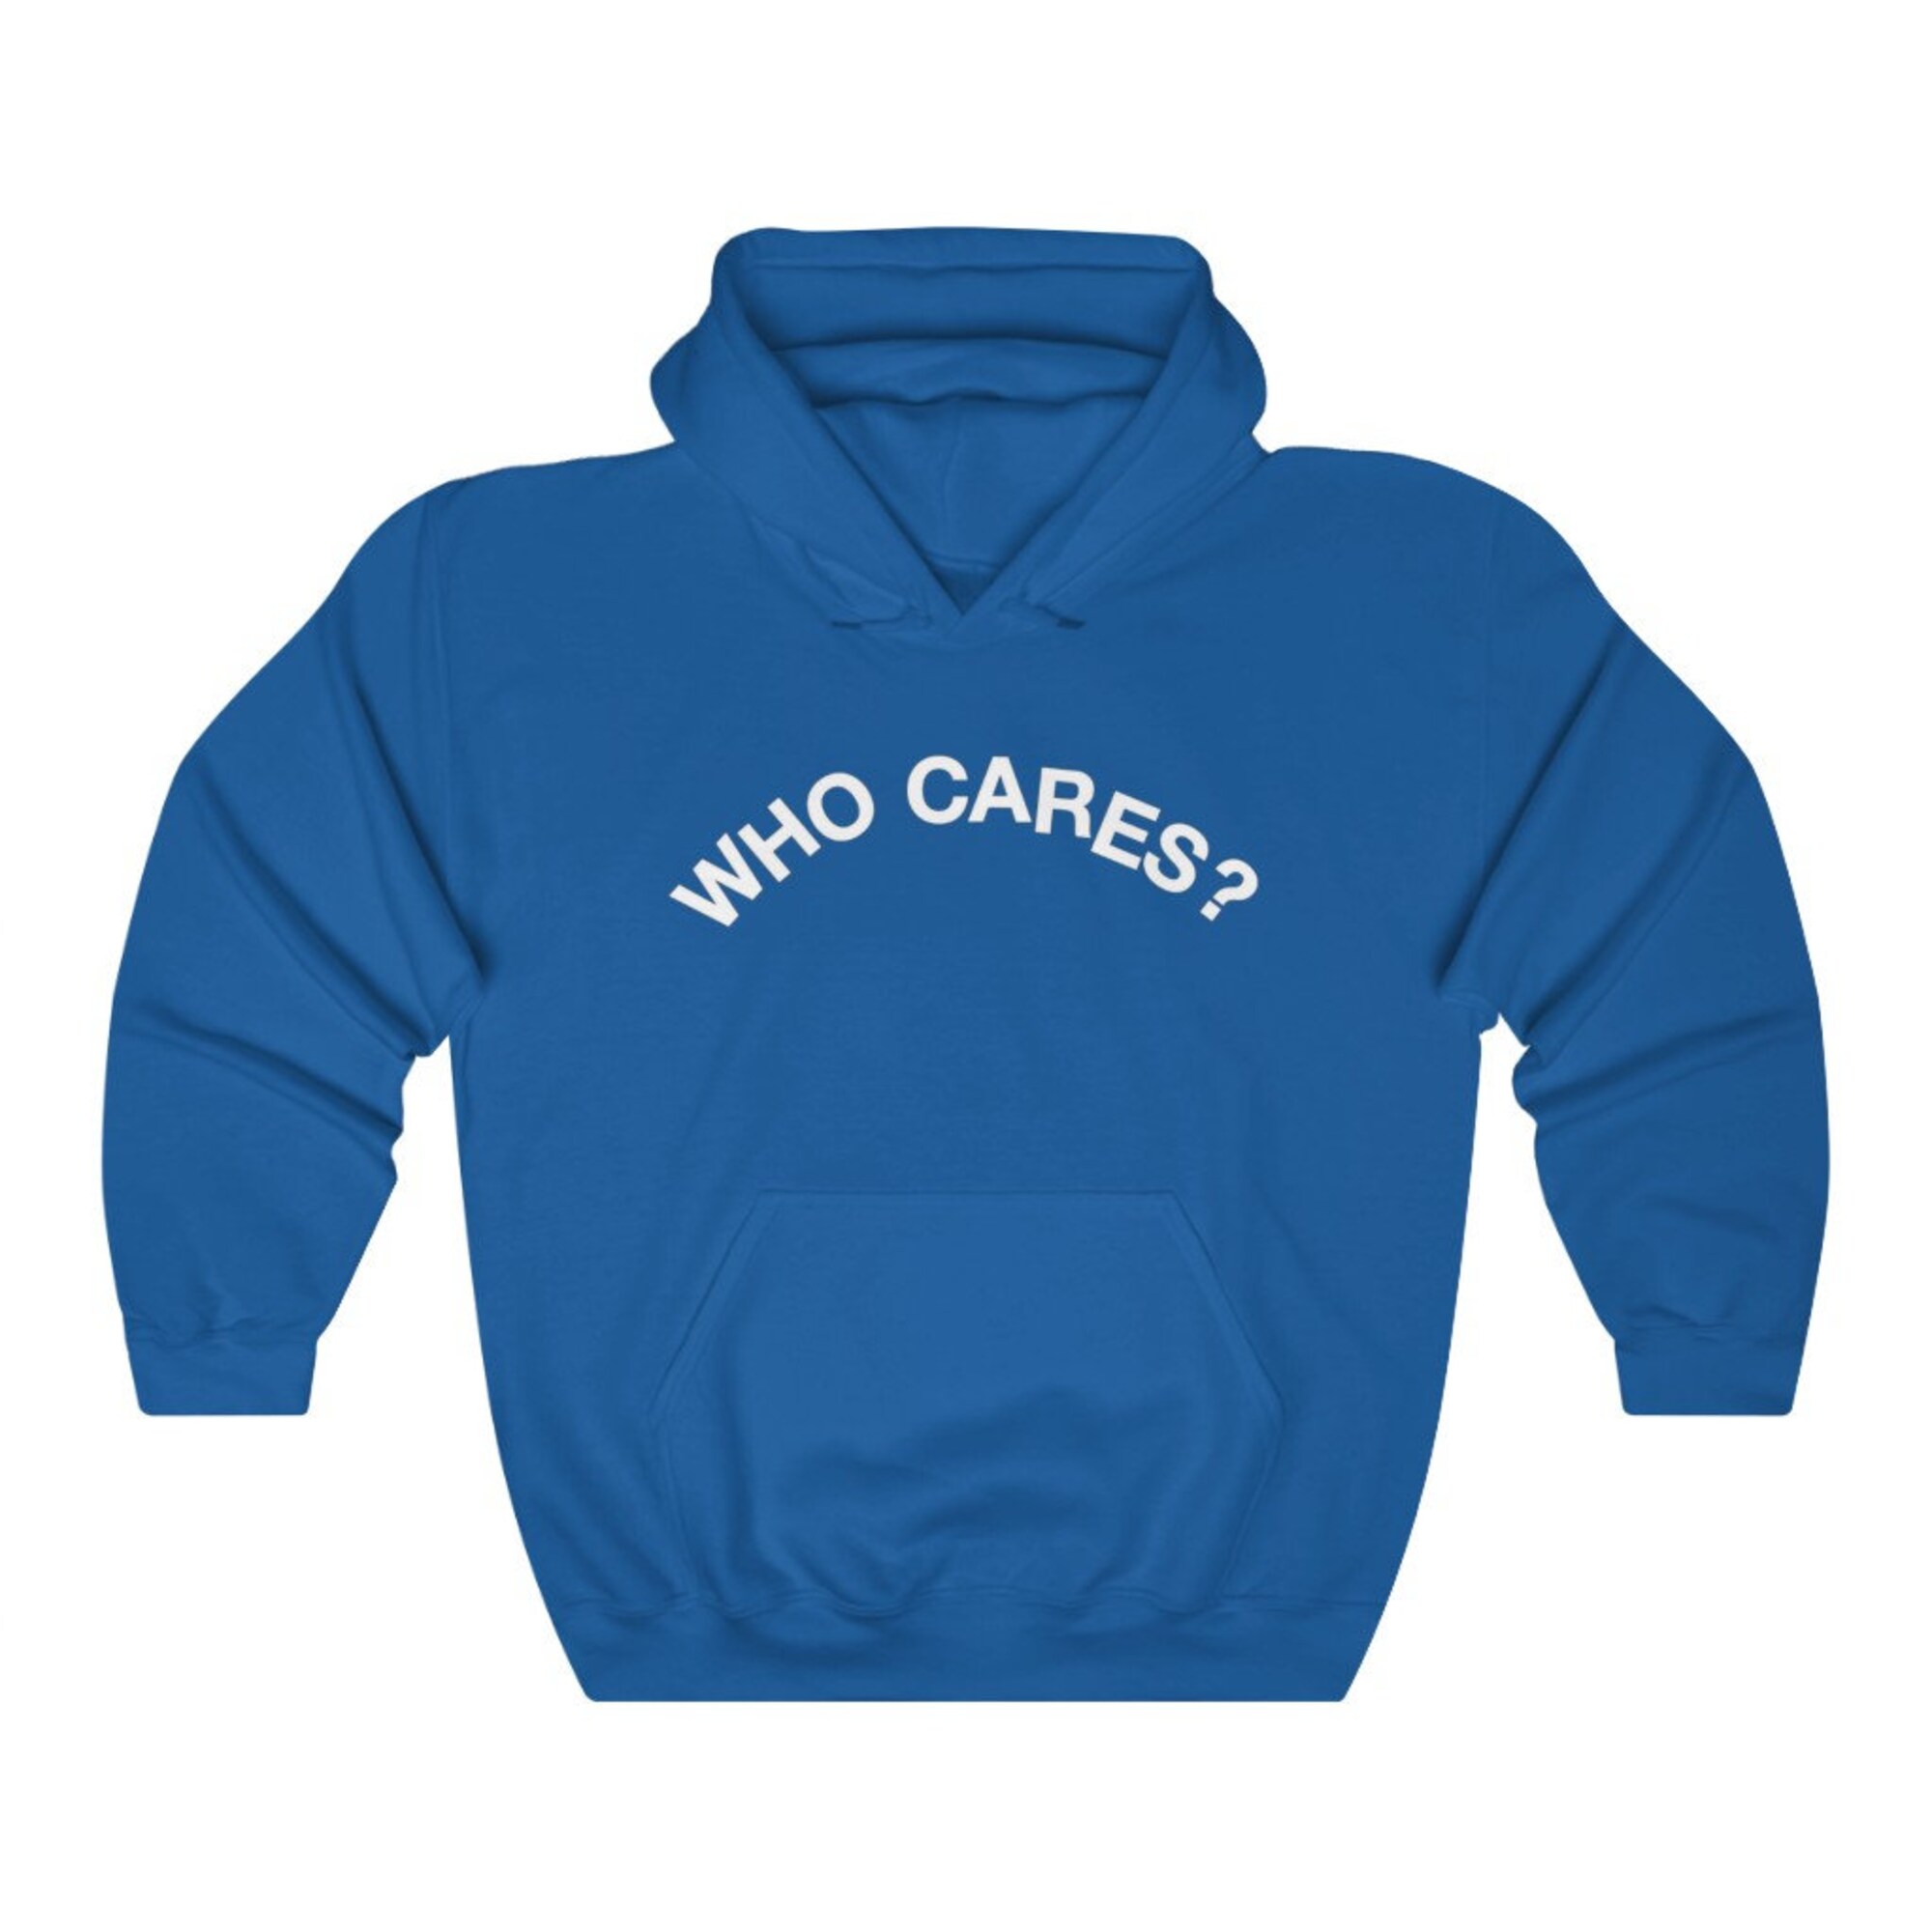 Who Cares Rex Inspired Hooded Sweatshirt/Hoodie